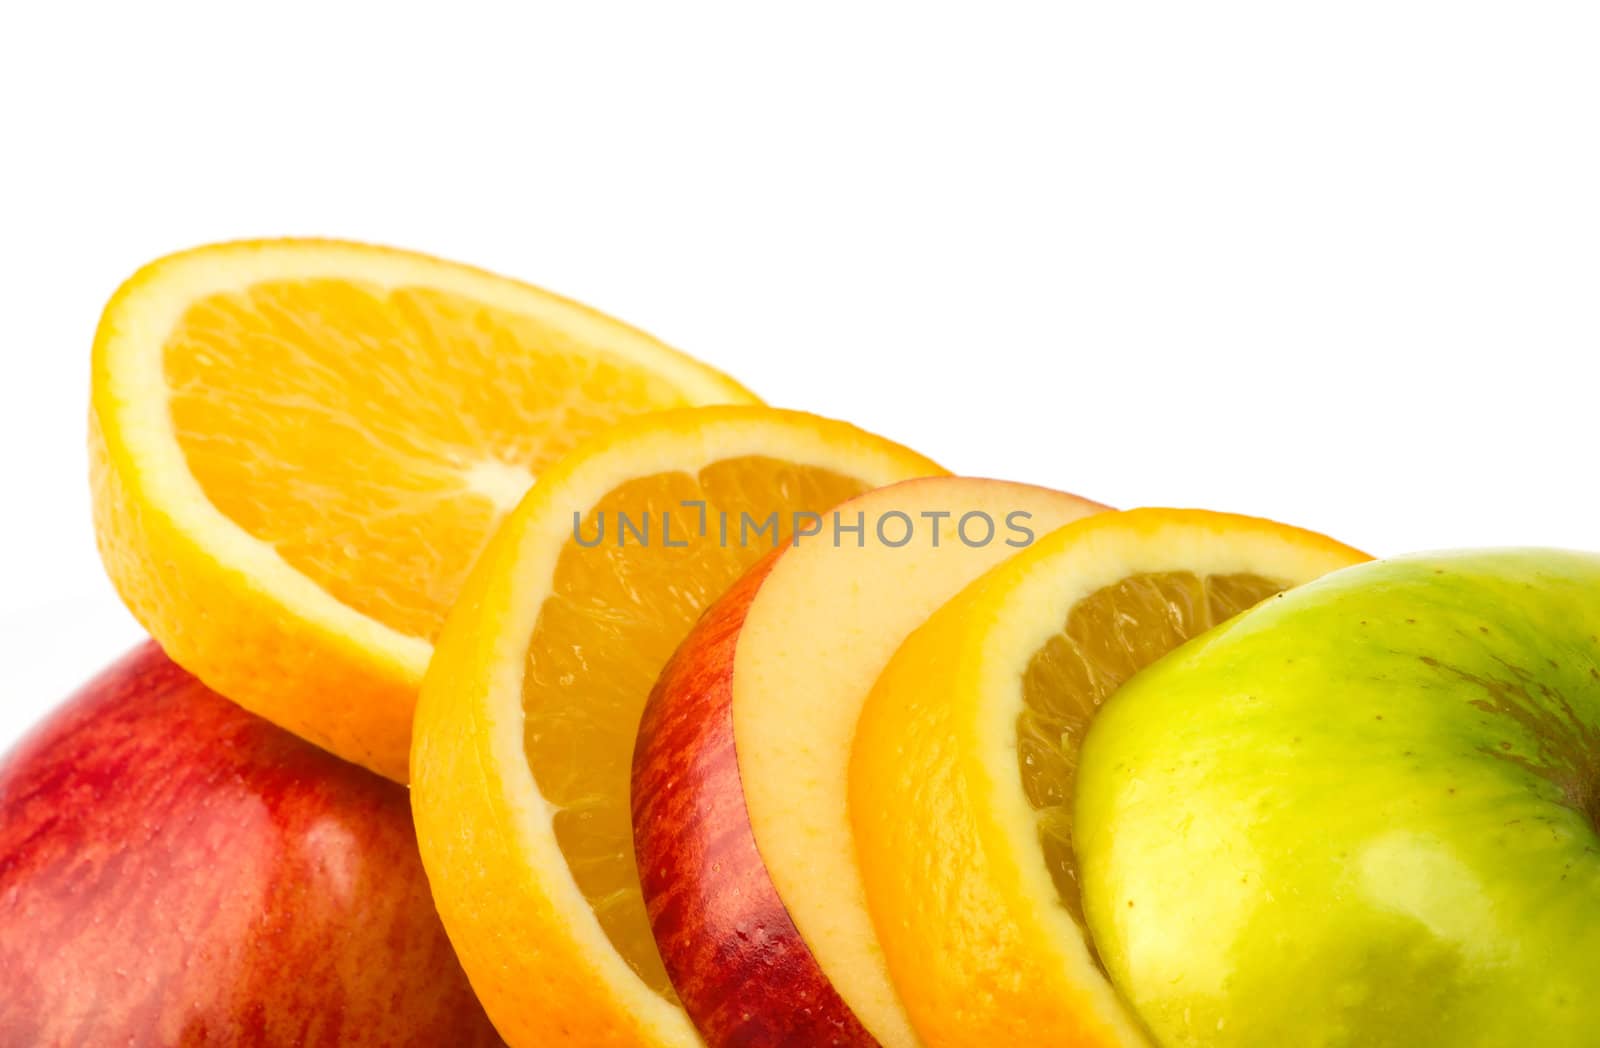 Fruit mix by Bedolaga